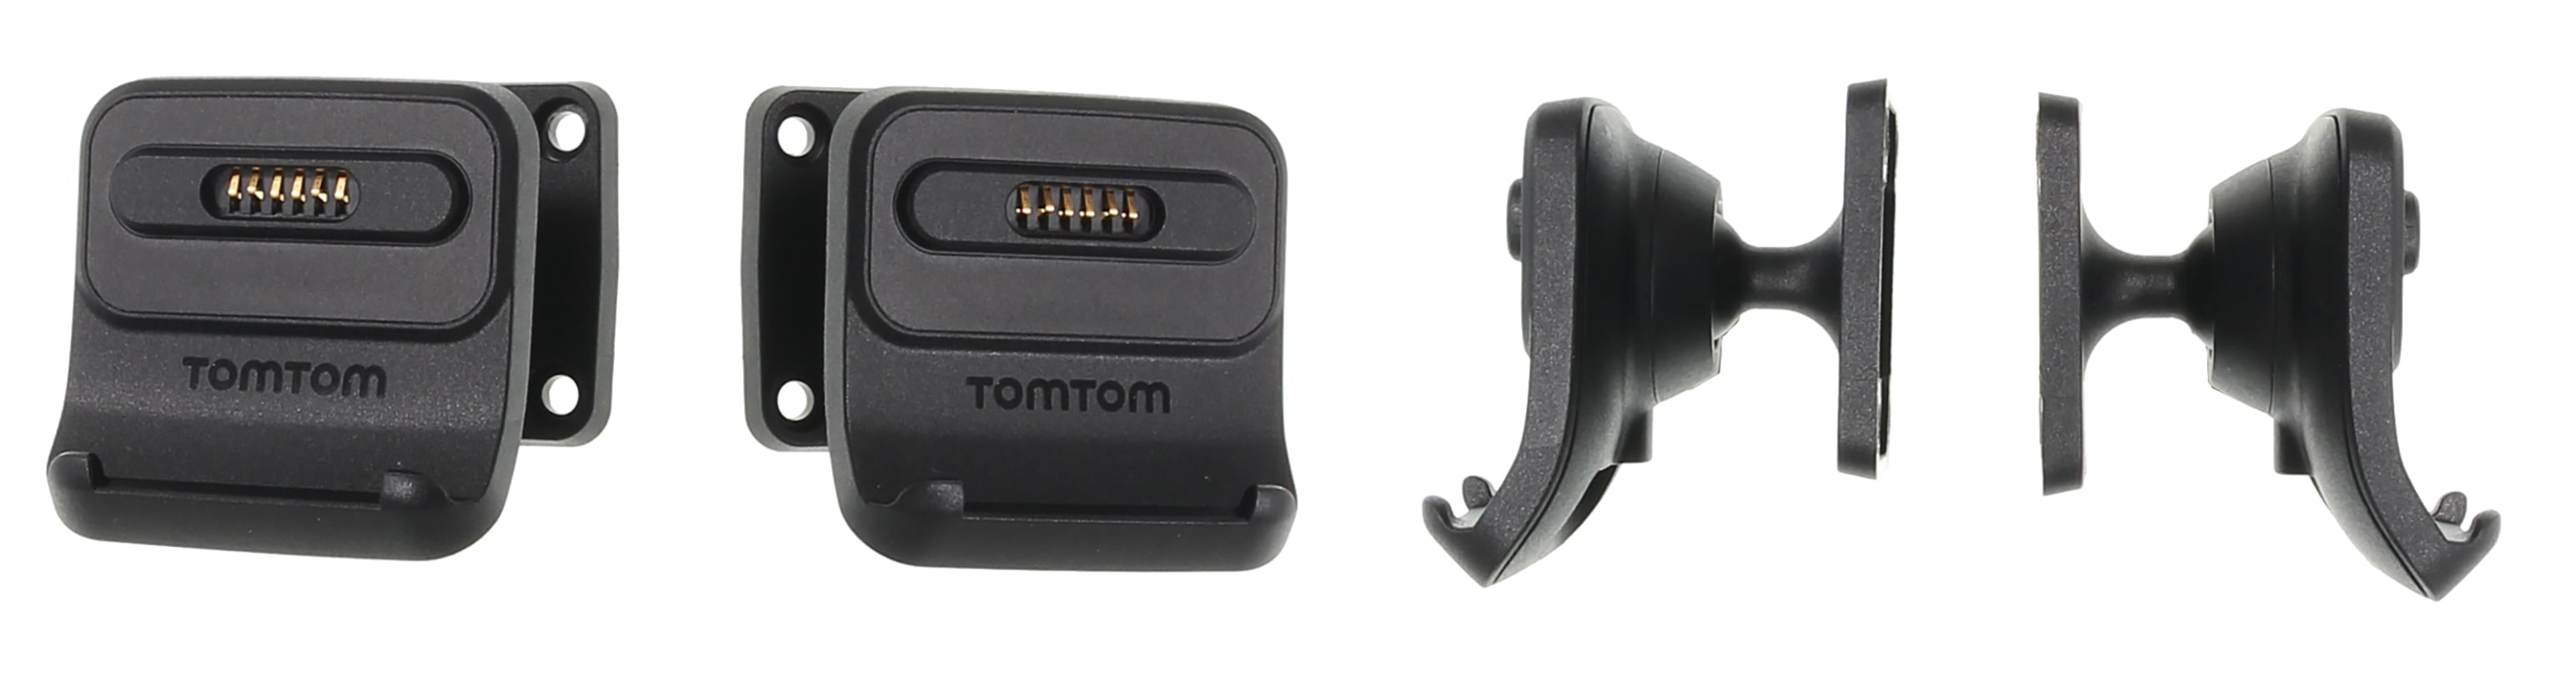 Active Dock Holder with Tilt Swivel for TomTom GO 6200